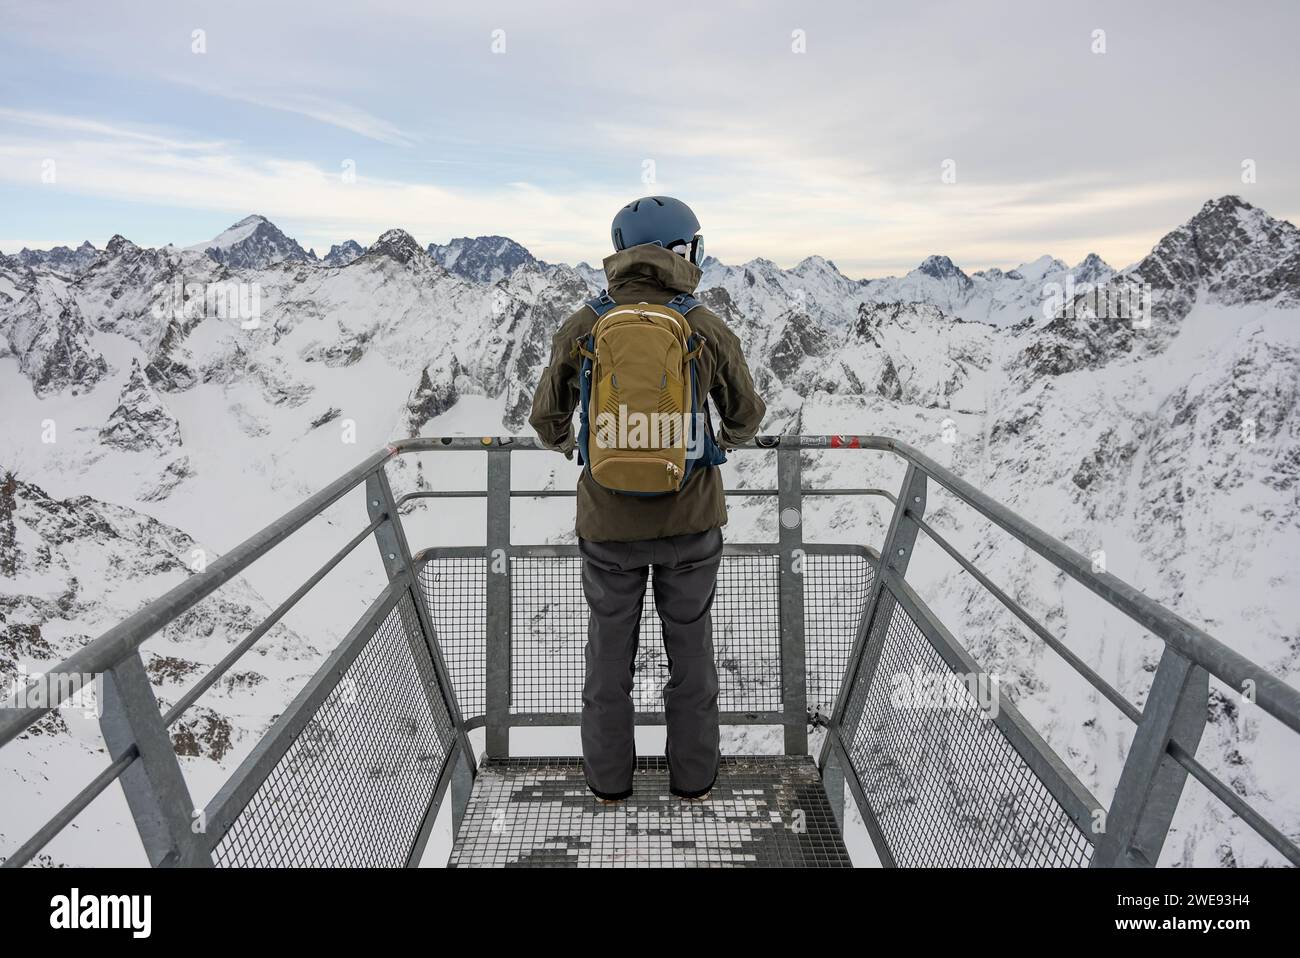 L'homme se tenait à un point de vue dans les Alpes. Snowboarder se dresse sur le fond des Alpes françaises. Hiver dans les alpes françaises. Banque D'Images